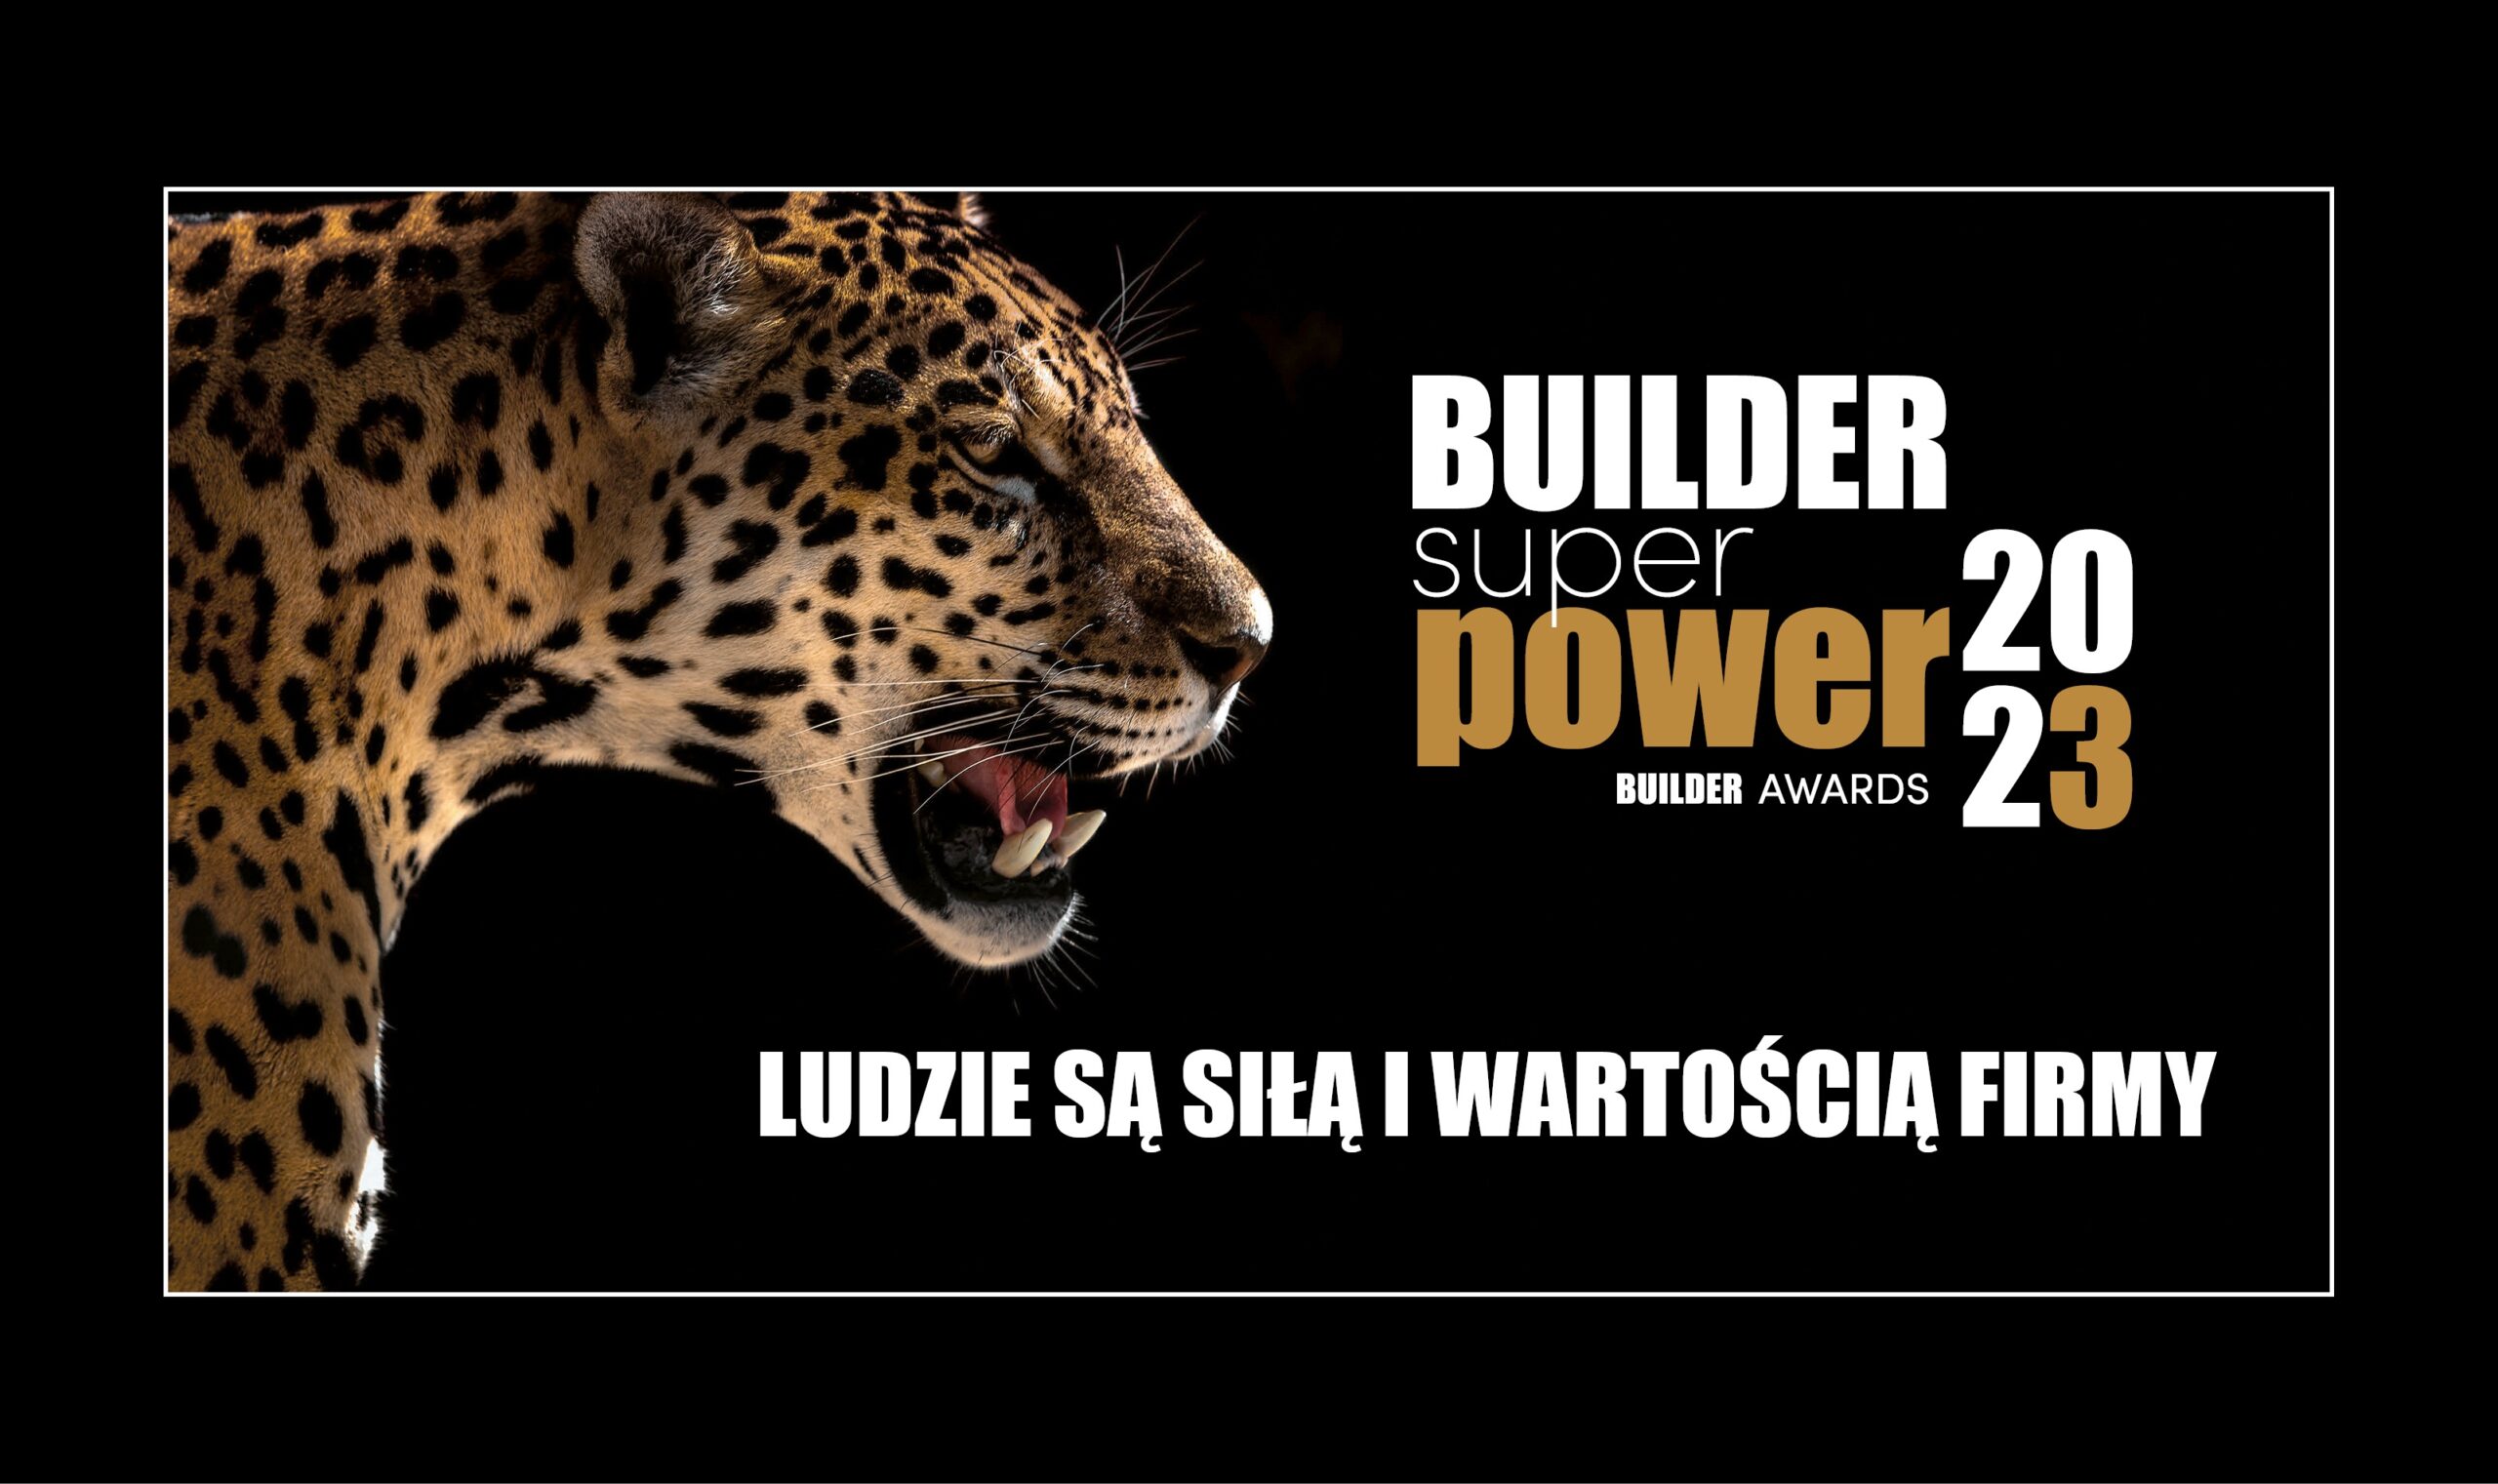 BUILDER SUPER POWER III EDYCJA